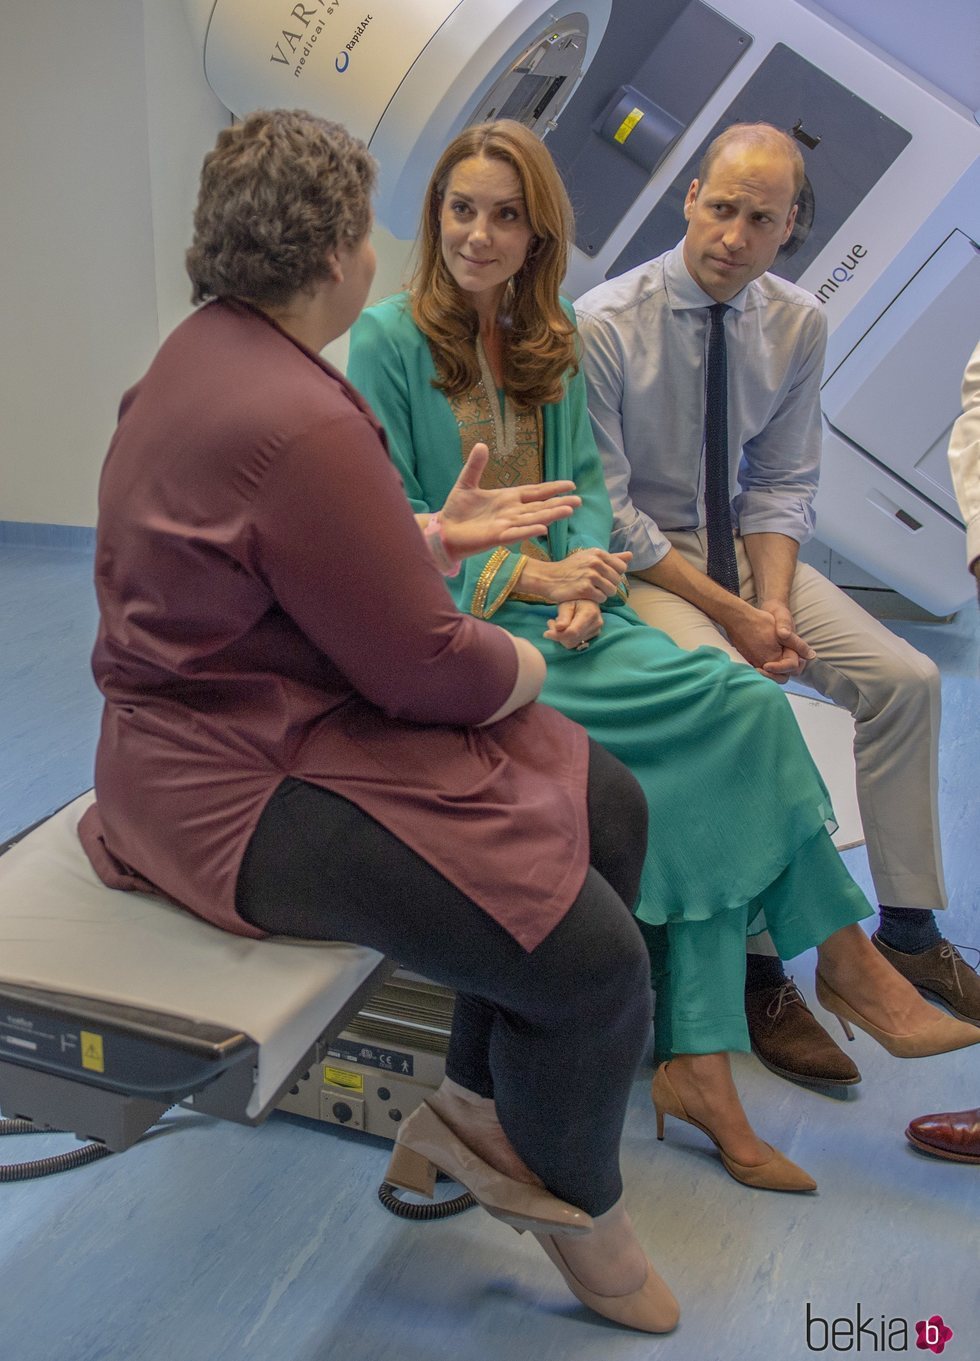 Los Duques de Cambridge hablando con una mujer en un hospital infantil en Pakistán